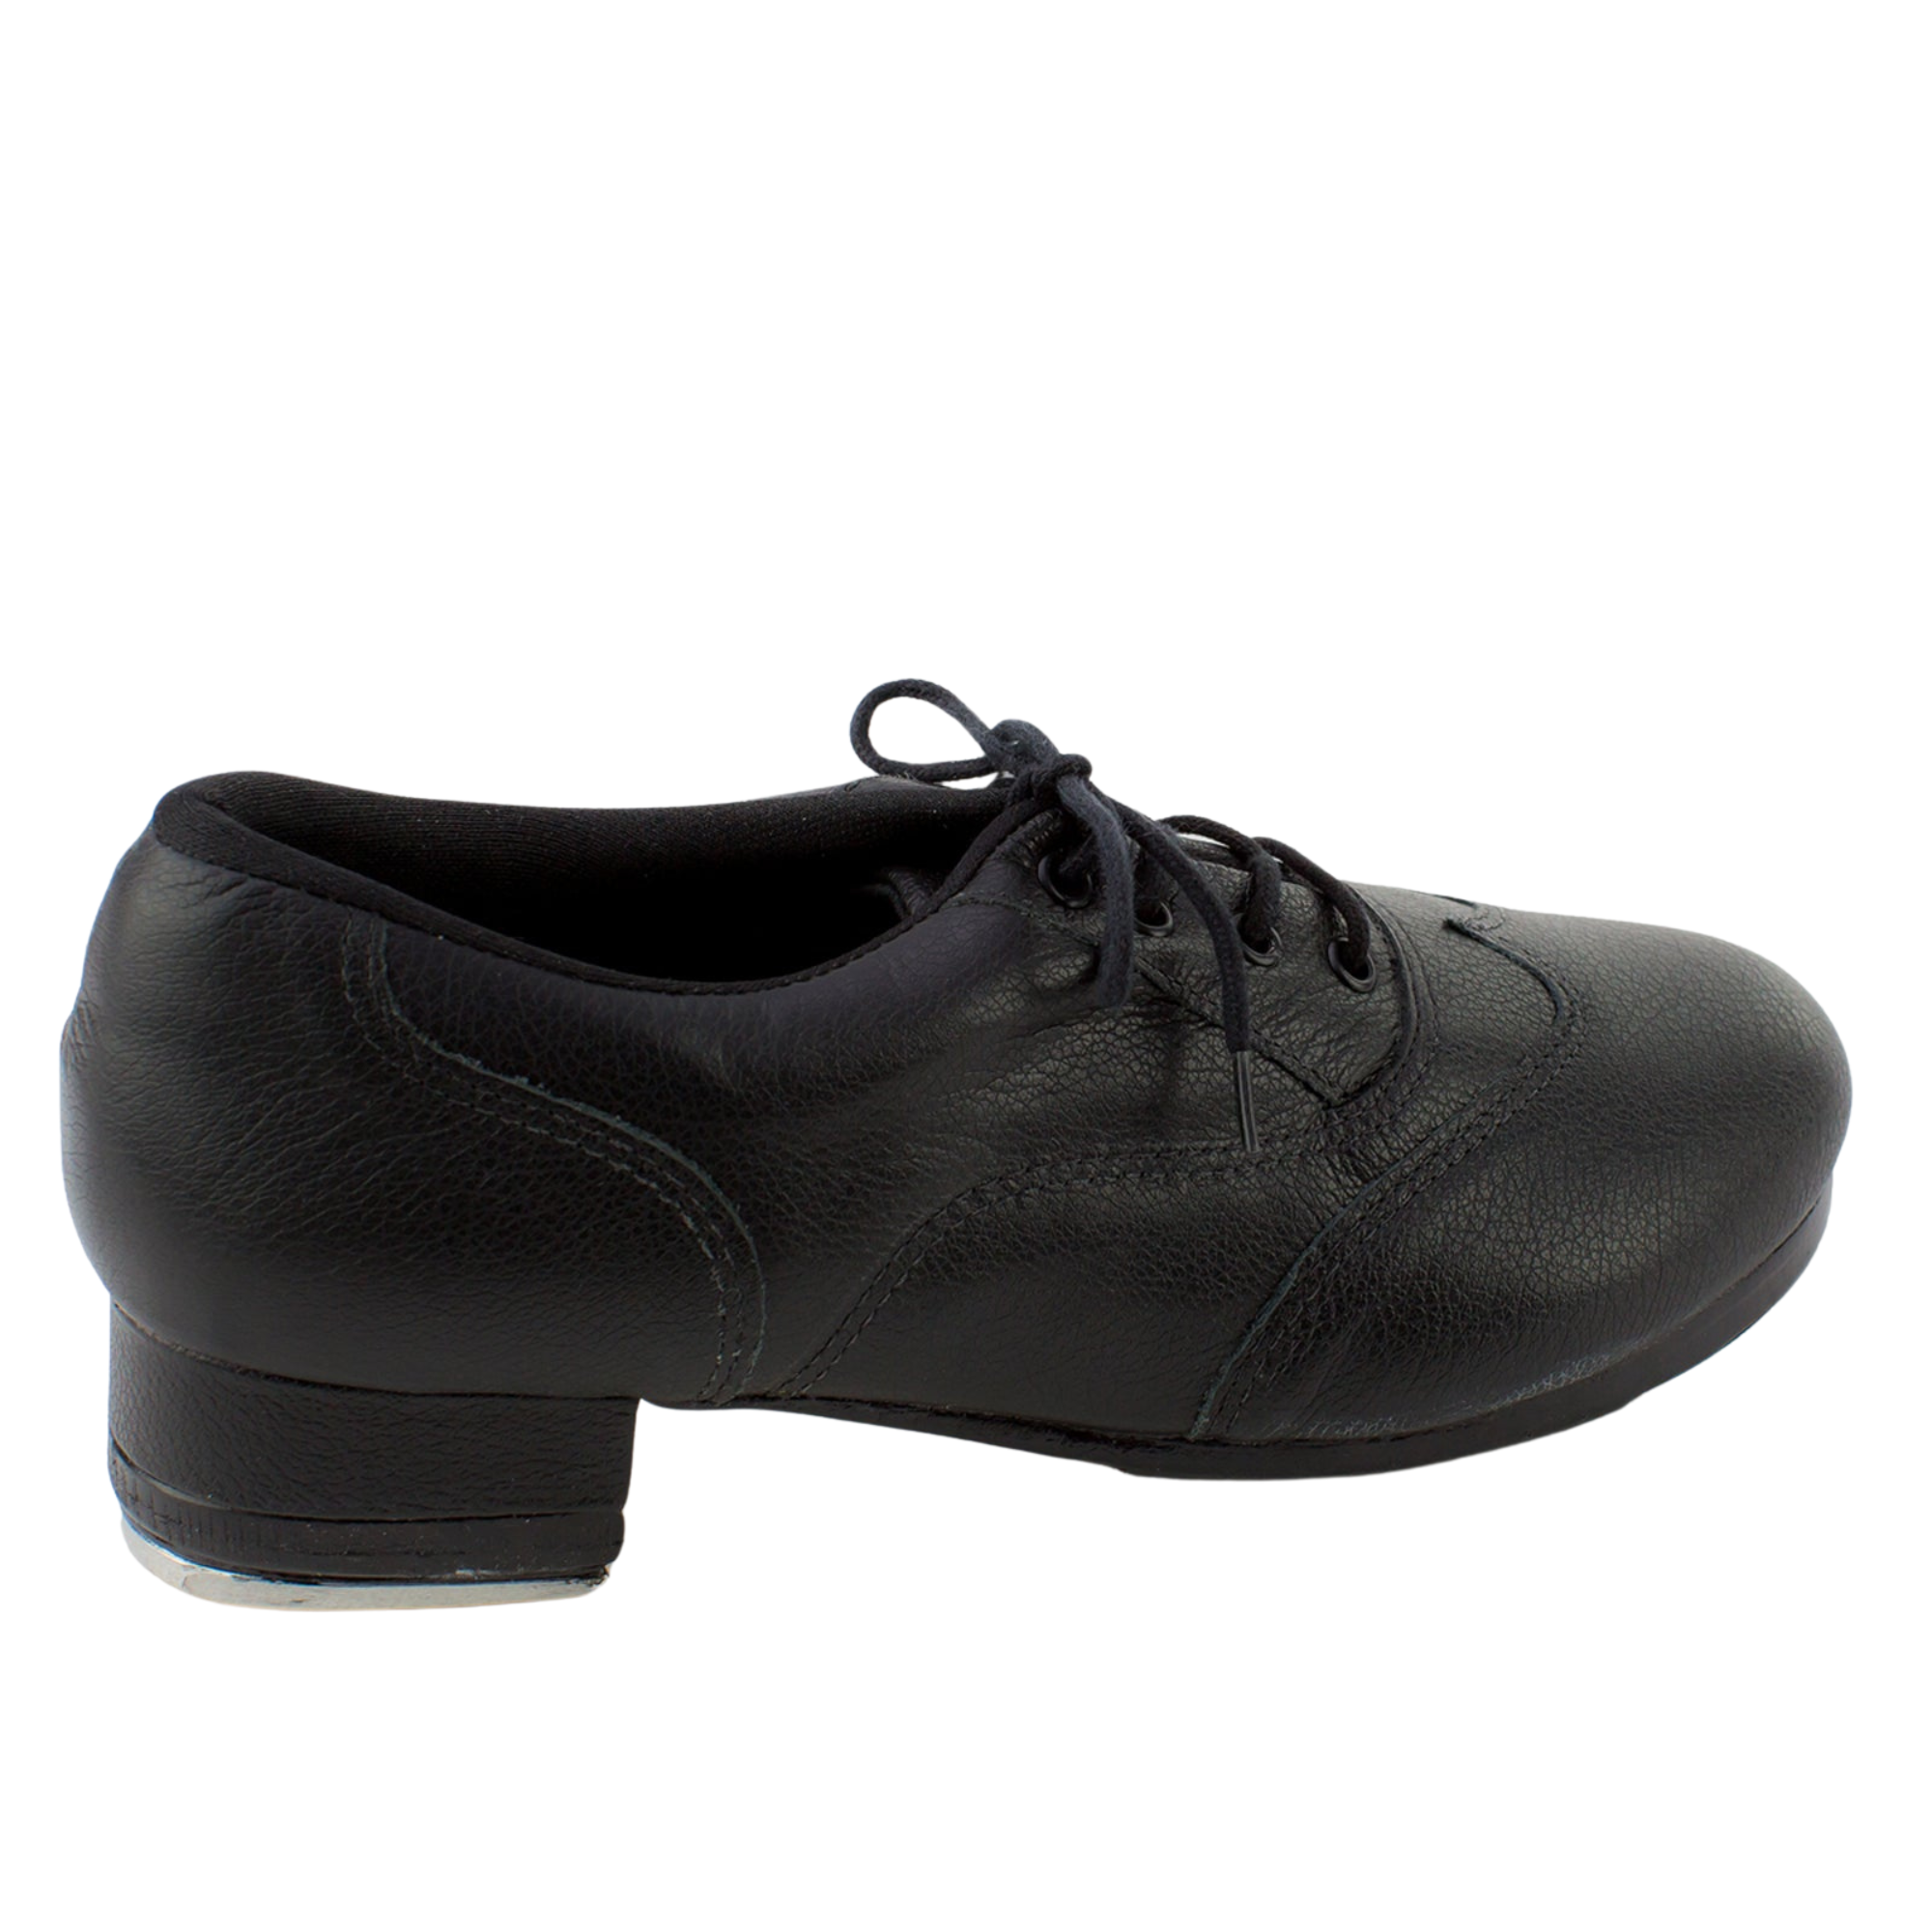 TA200 Zenith Tap Shoe Black 2